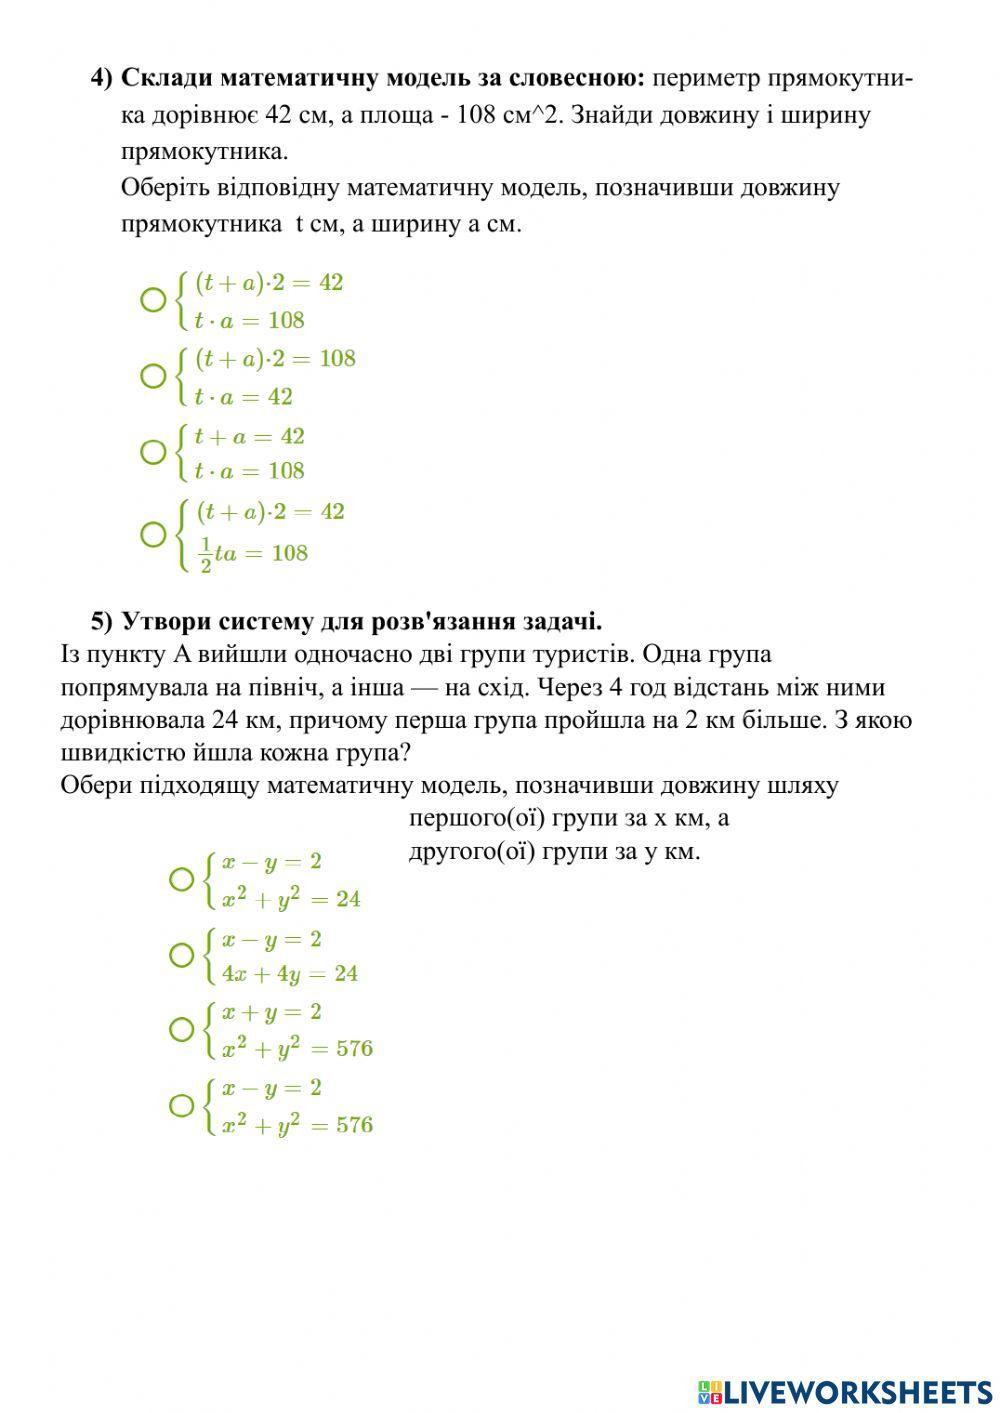 Система двох рівнянь із двома змінними як математична модель прикладної задачі